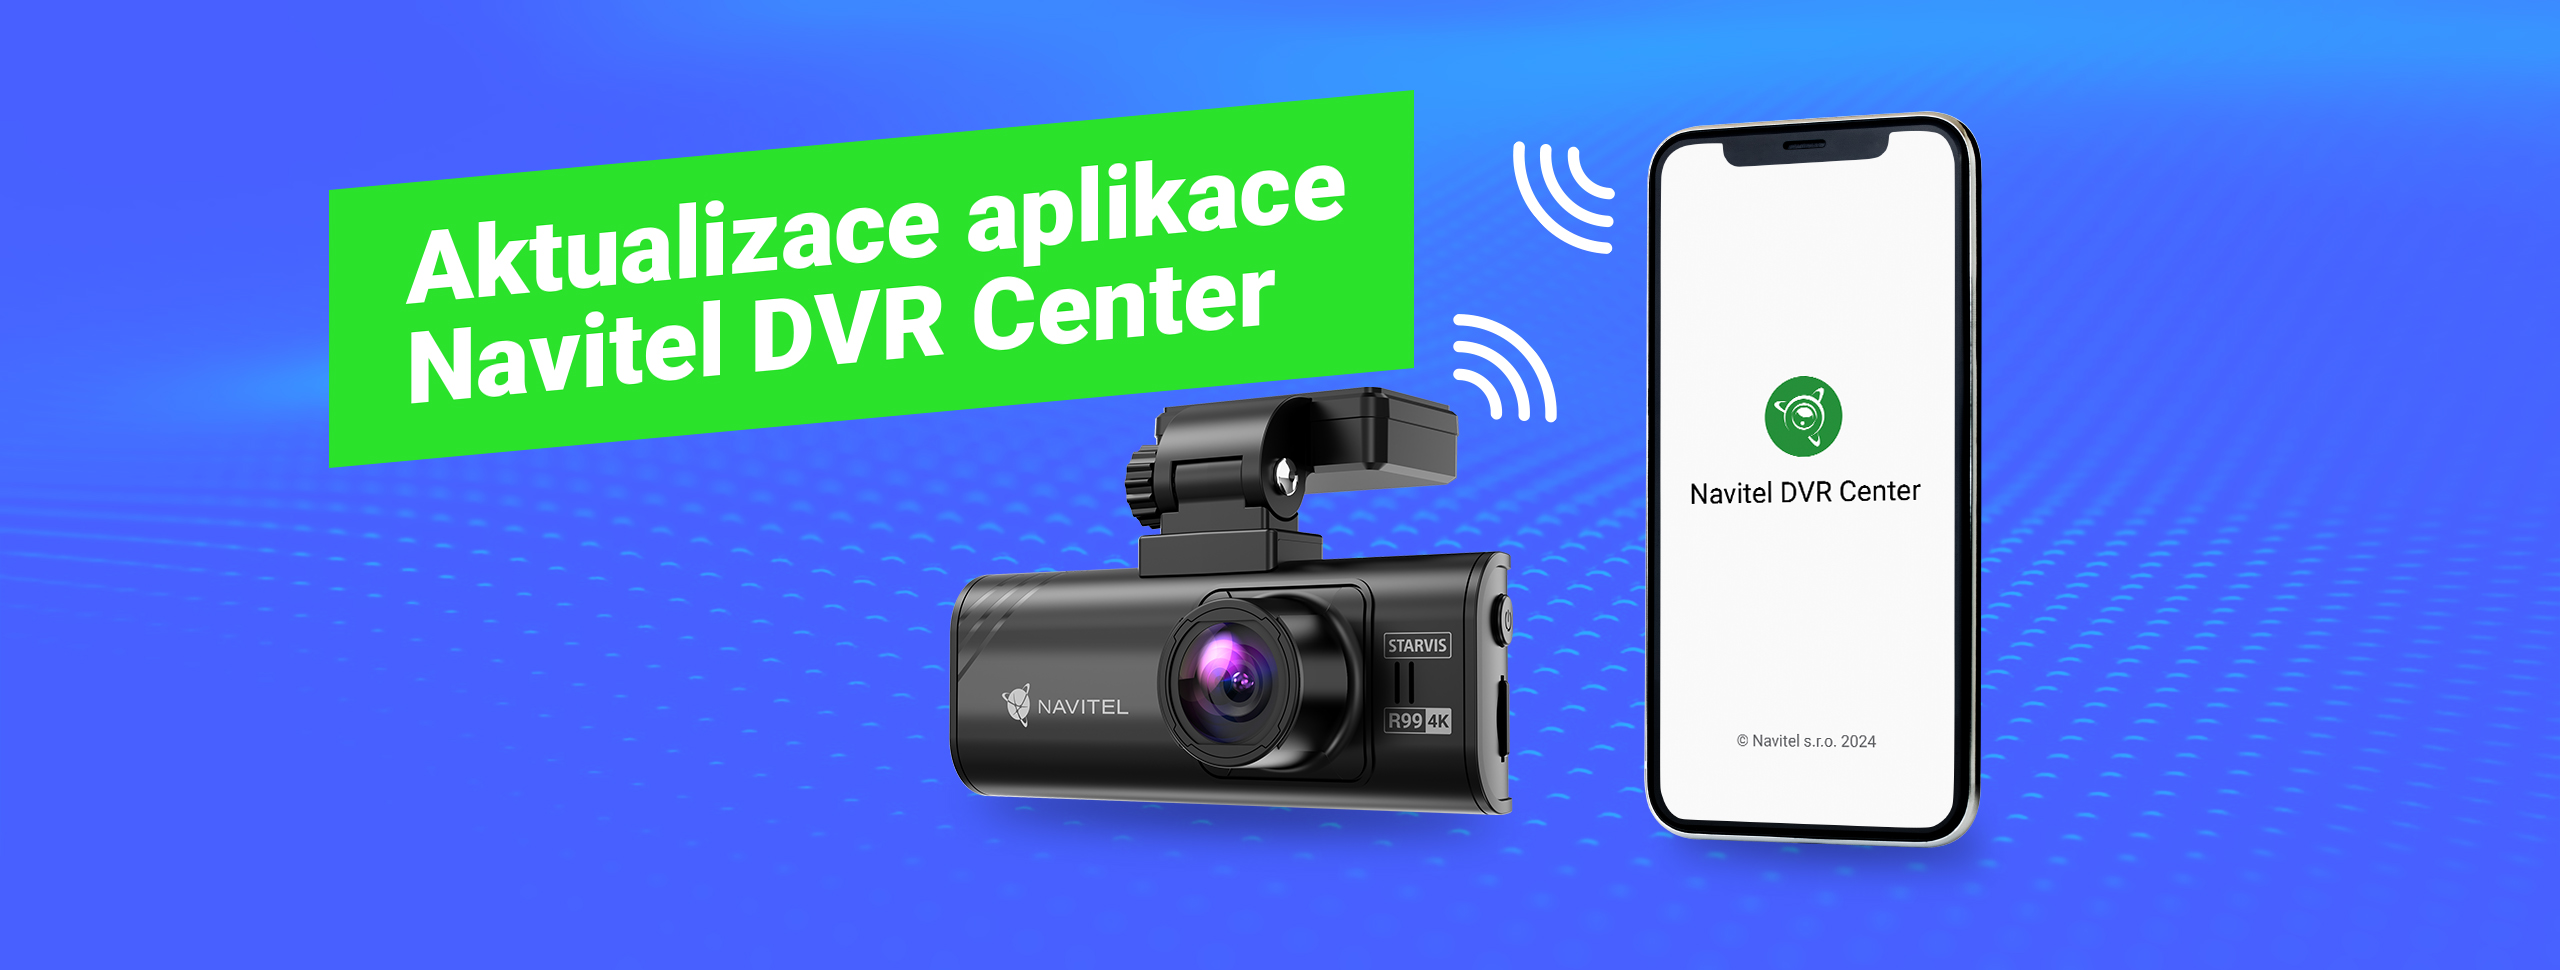 Aplikace Navitel DVR Center byla aktualizována